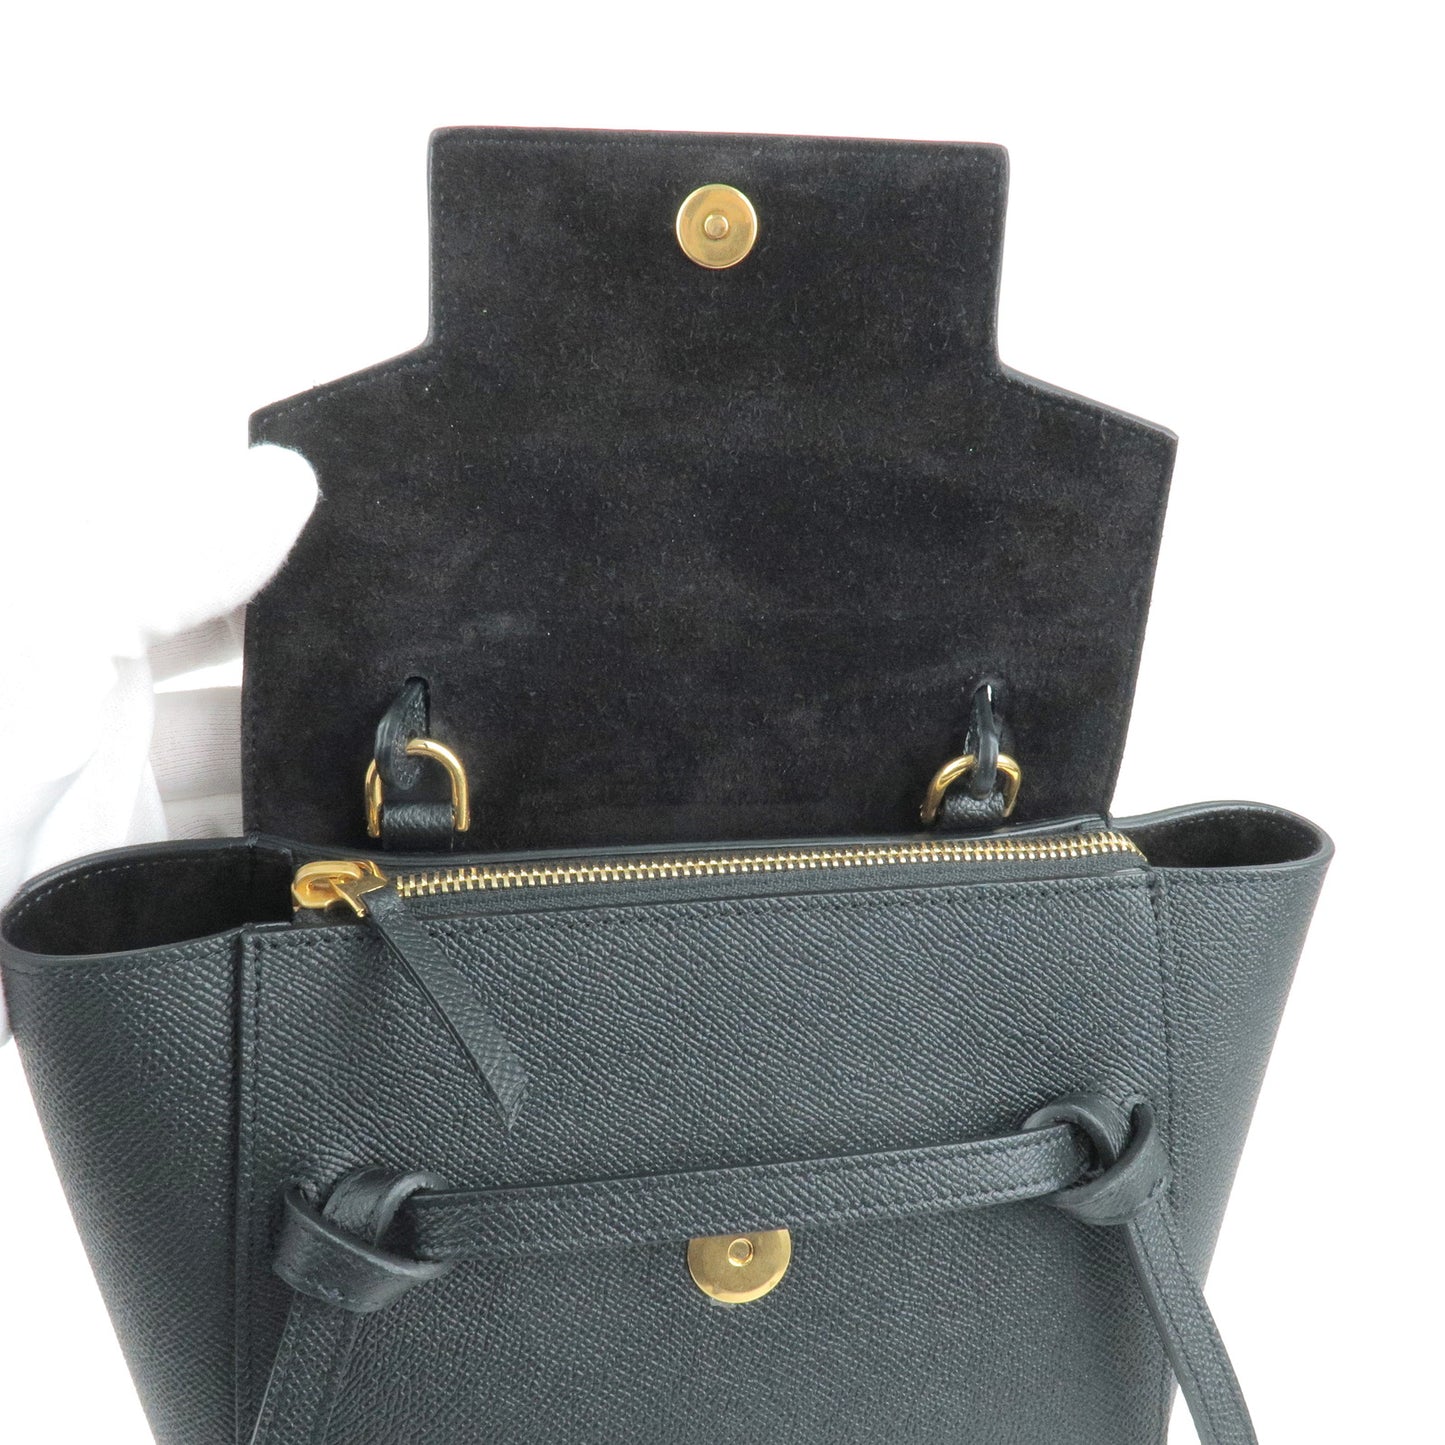 CELINE Leather Belt Bag Nano 2Way Bag Hand Bag Black 189003